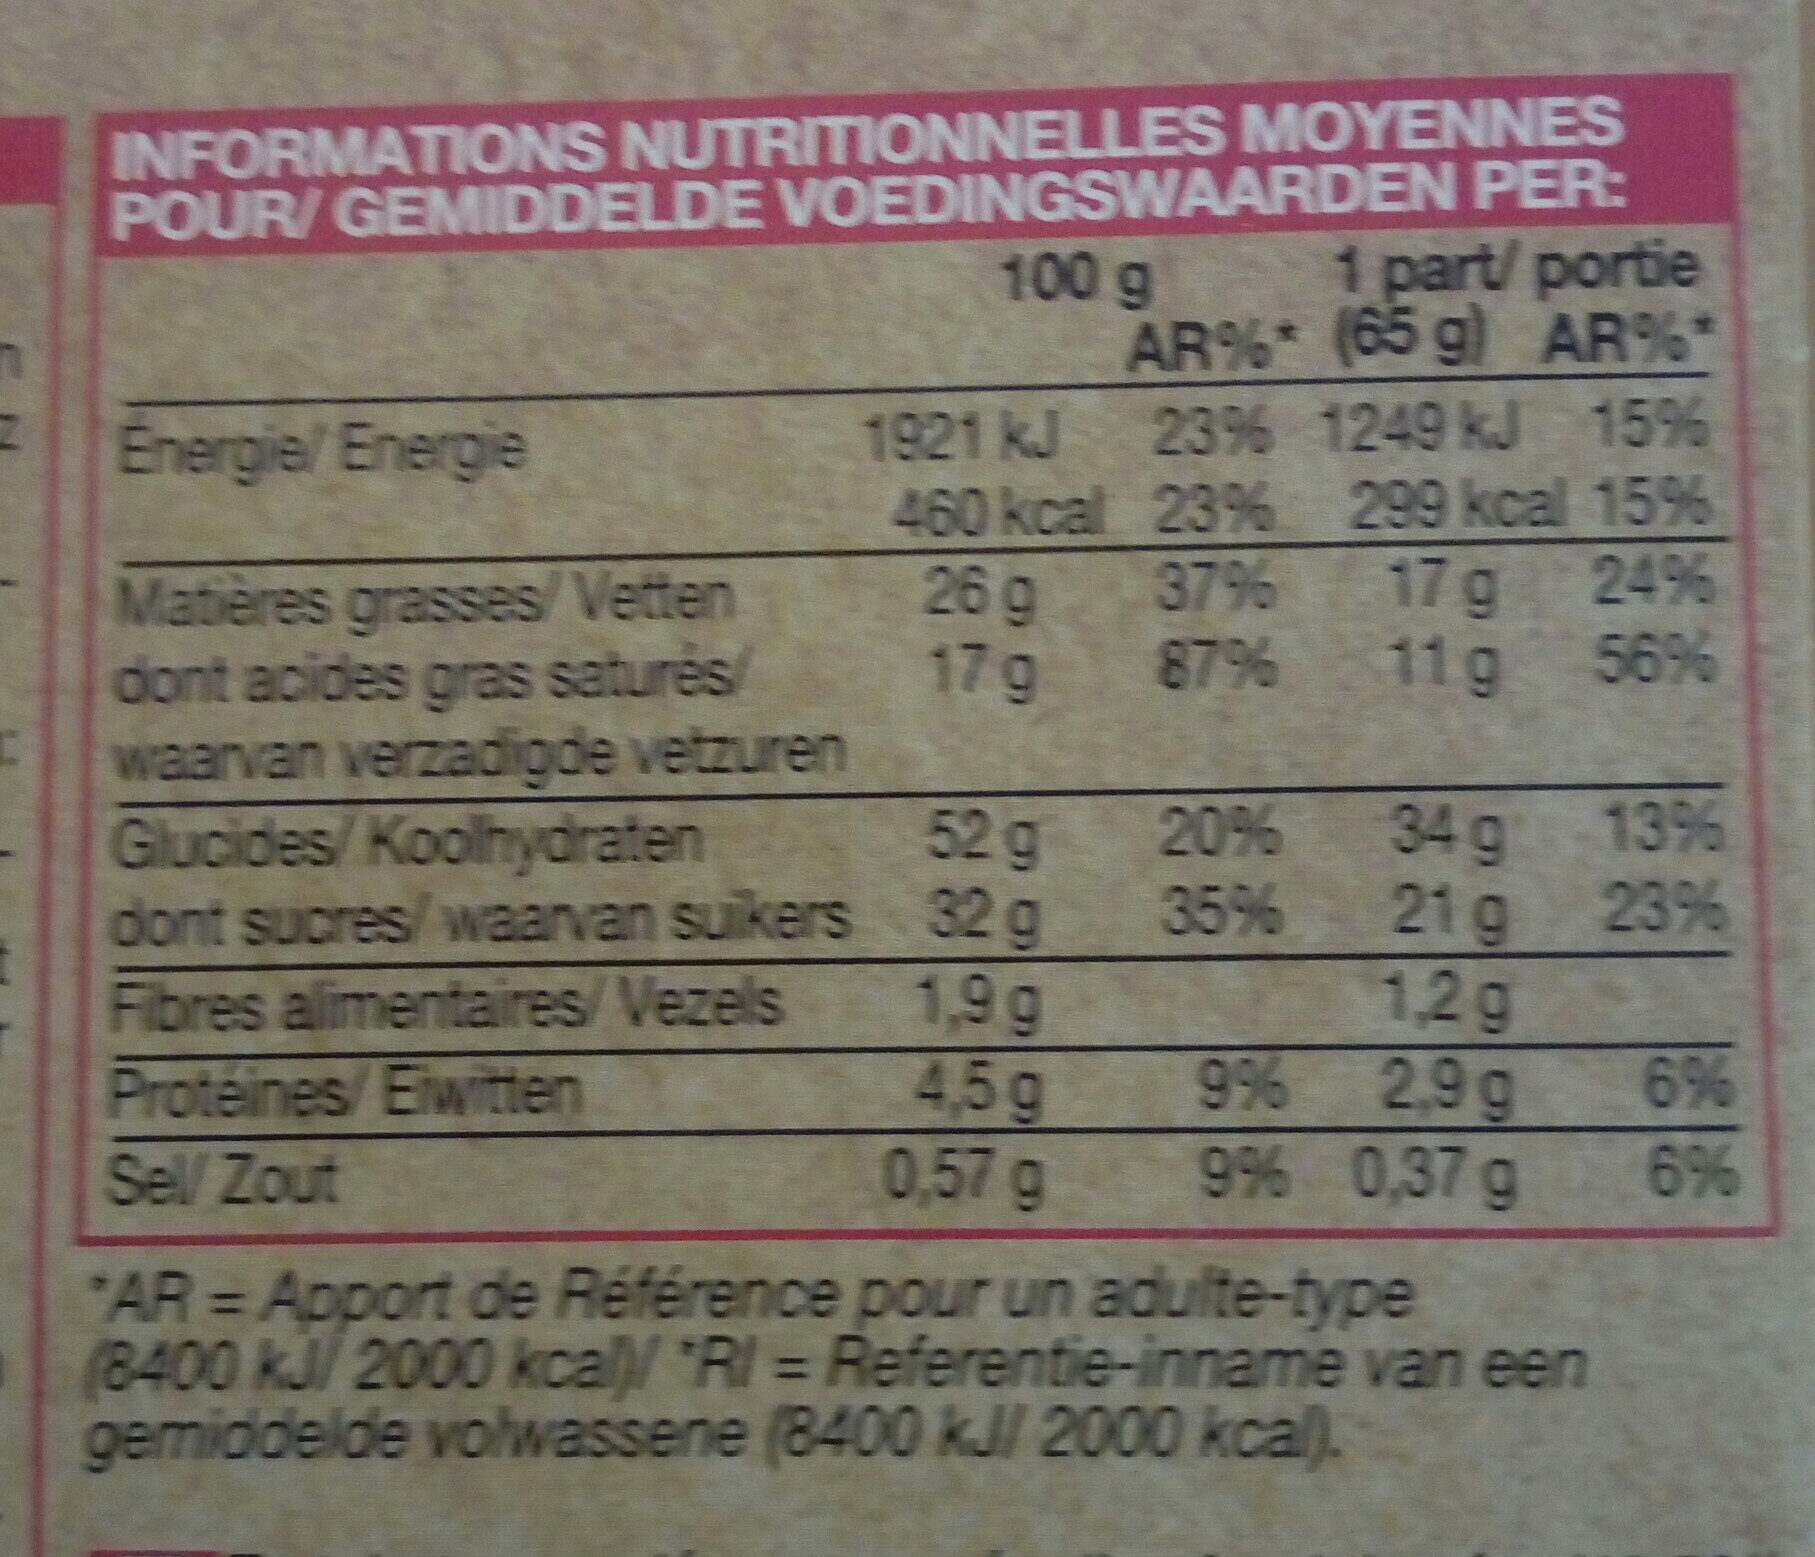 Tartelette au Chocolat et au Caramel Beurre Salé - Nutrition facts - fr